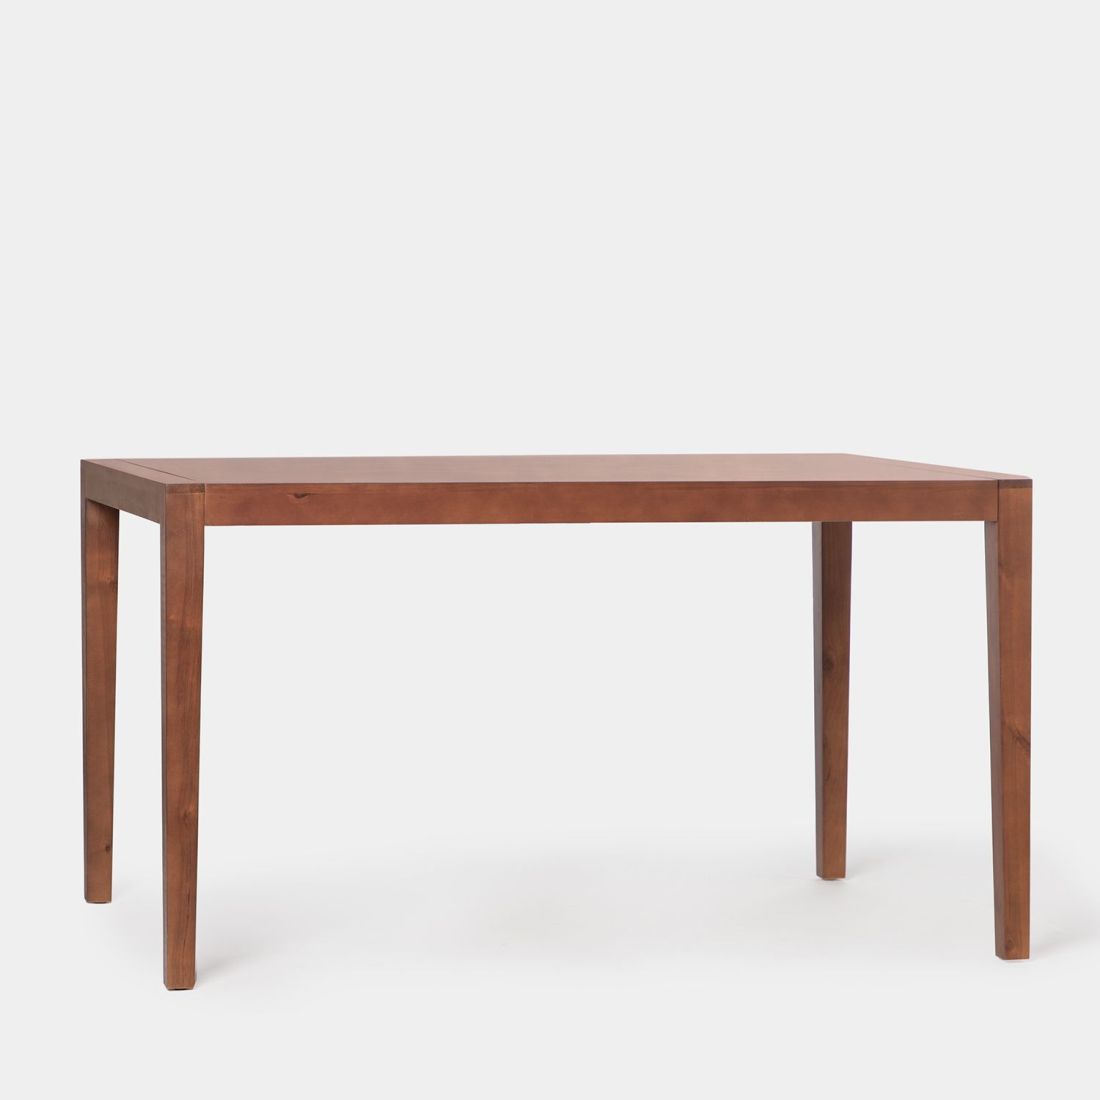 La mesa de comedor extensible 140/190 Mara en madera color castaño encaja en cualquier salón